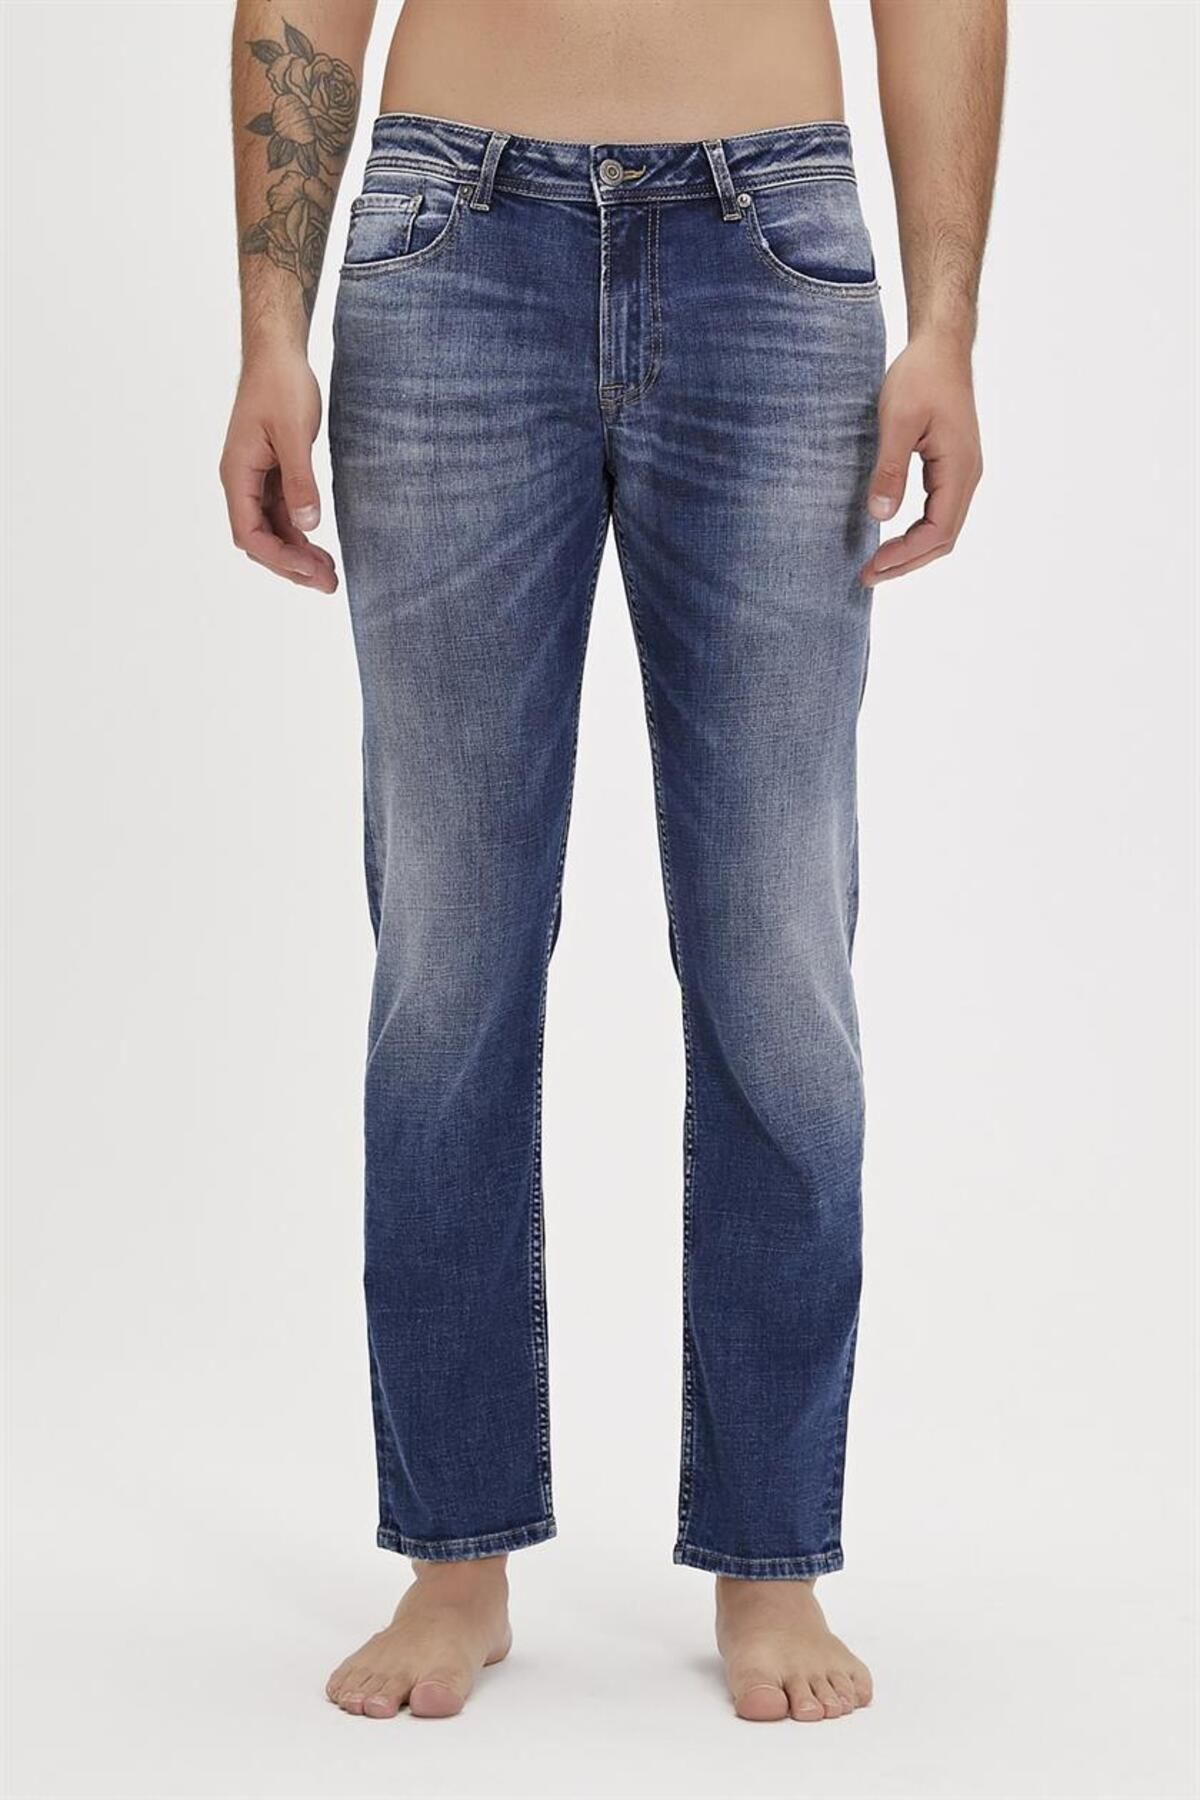 Bad Bear Franco Jeans Light Mavi Erkek Denim Pantolon